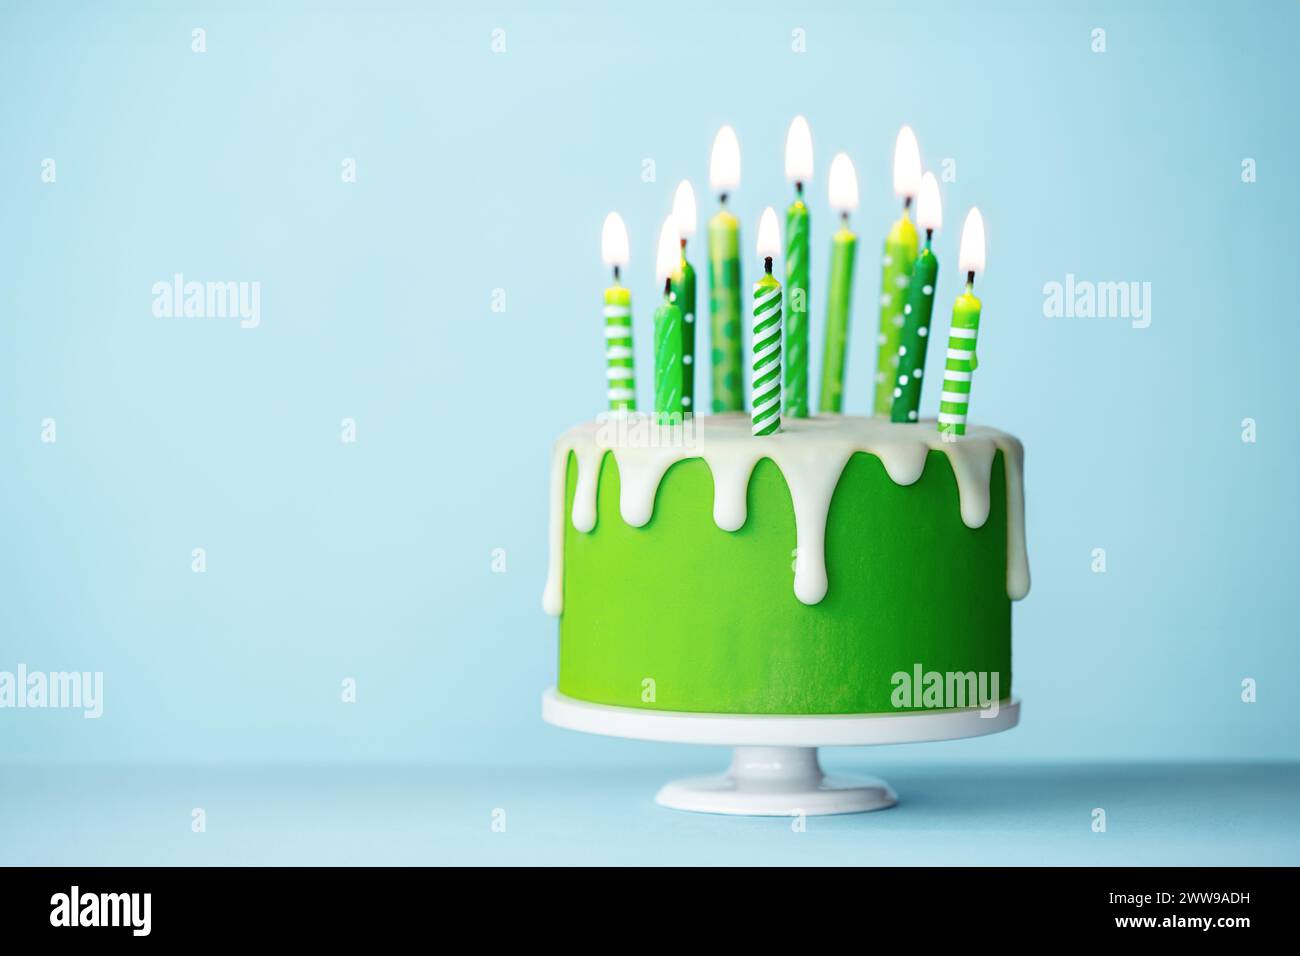 Gâteau d'anniversaire de célébration avec dix bougies d'anniversaire vertes Banque D'Images